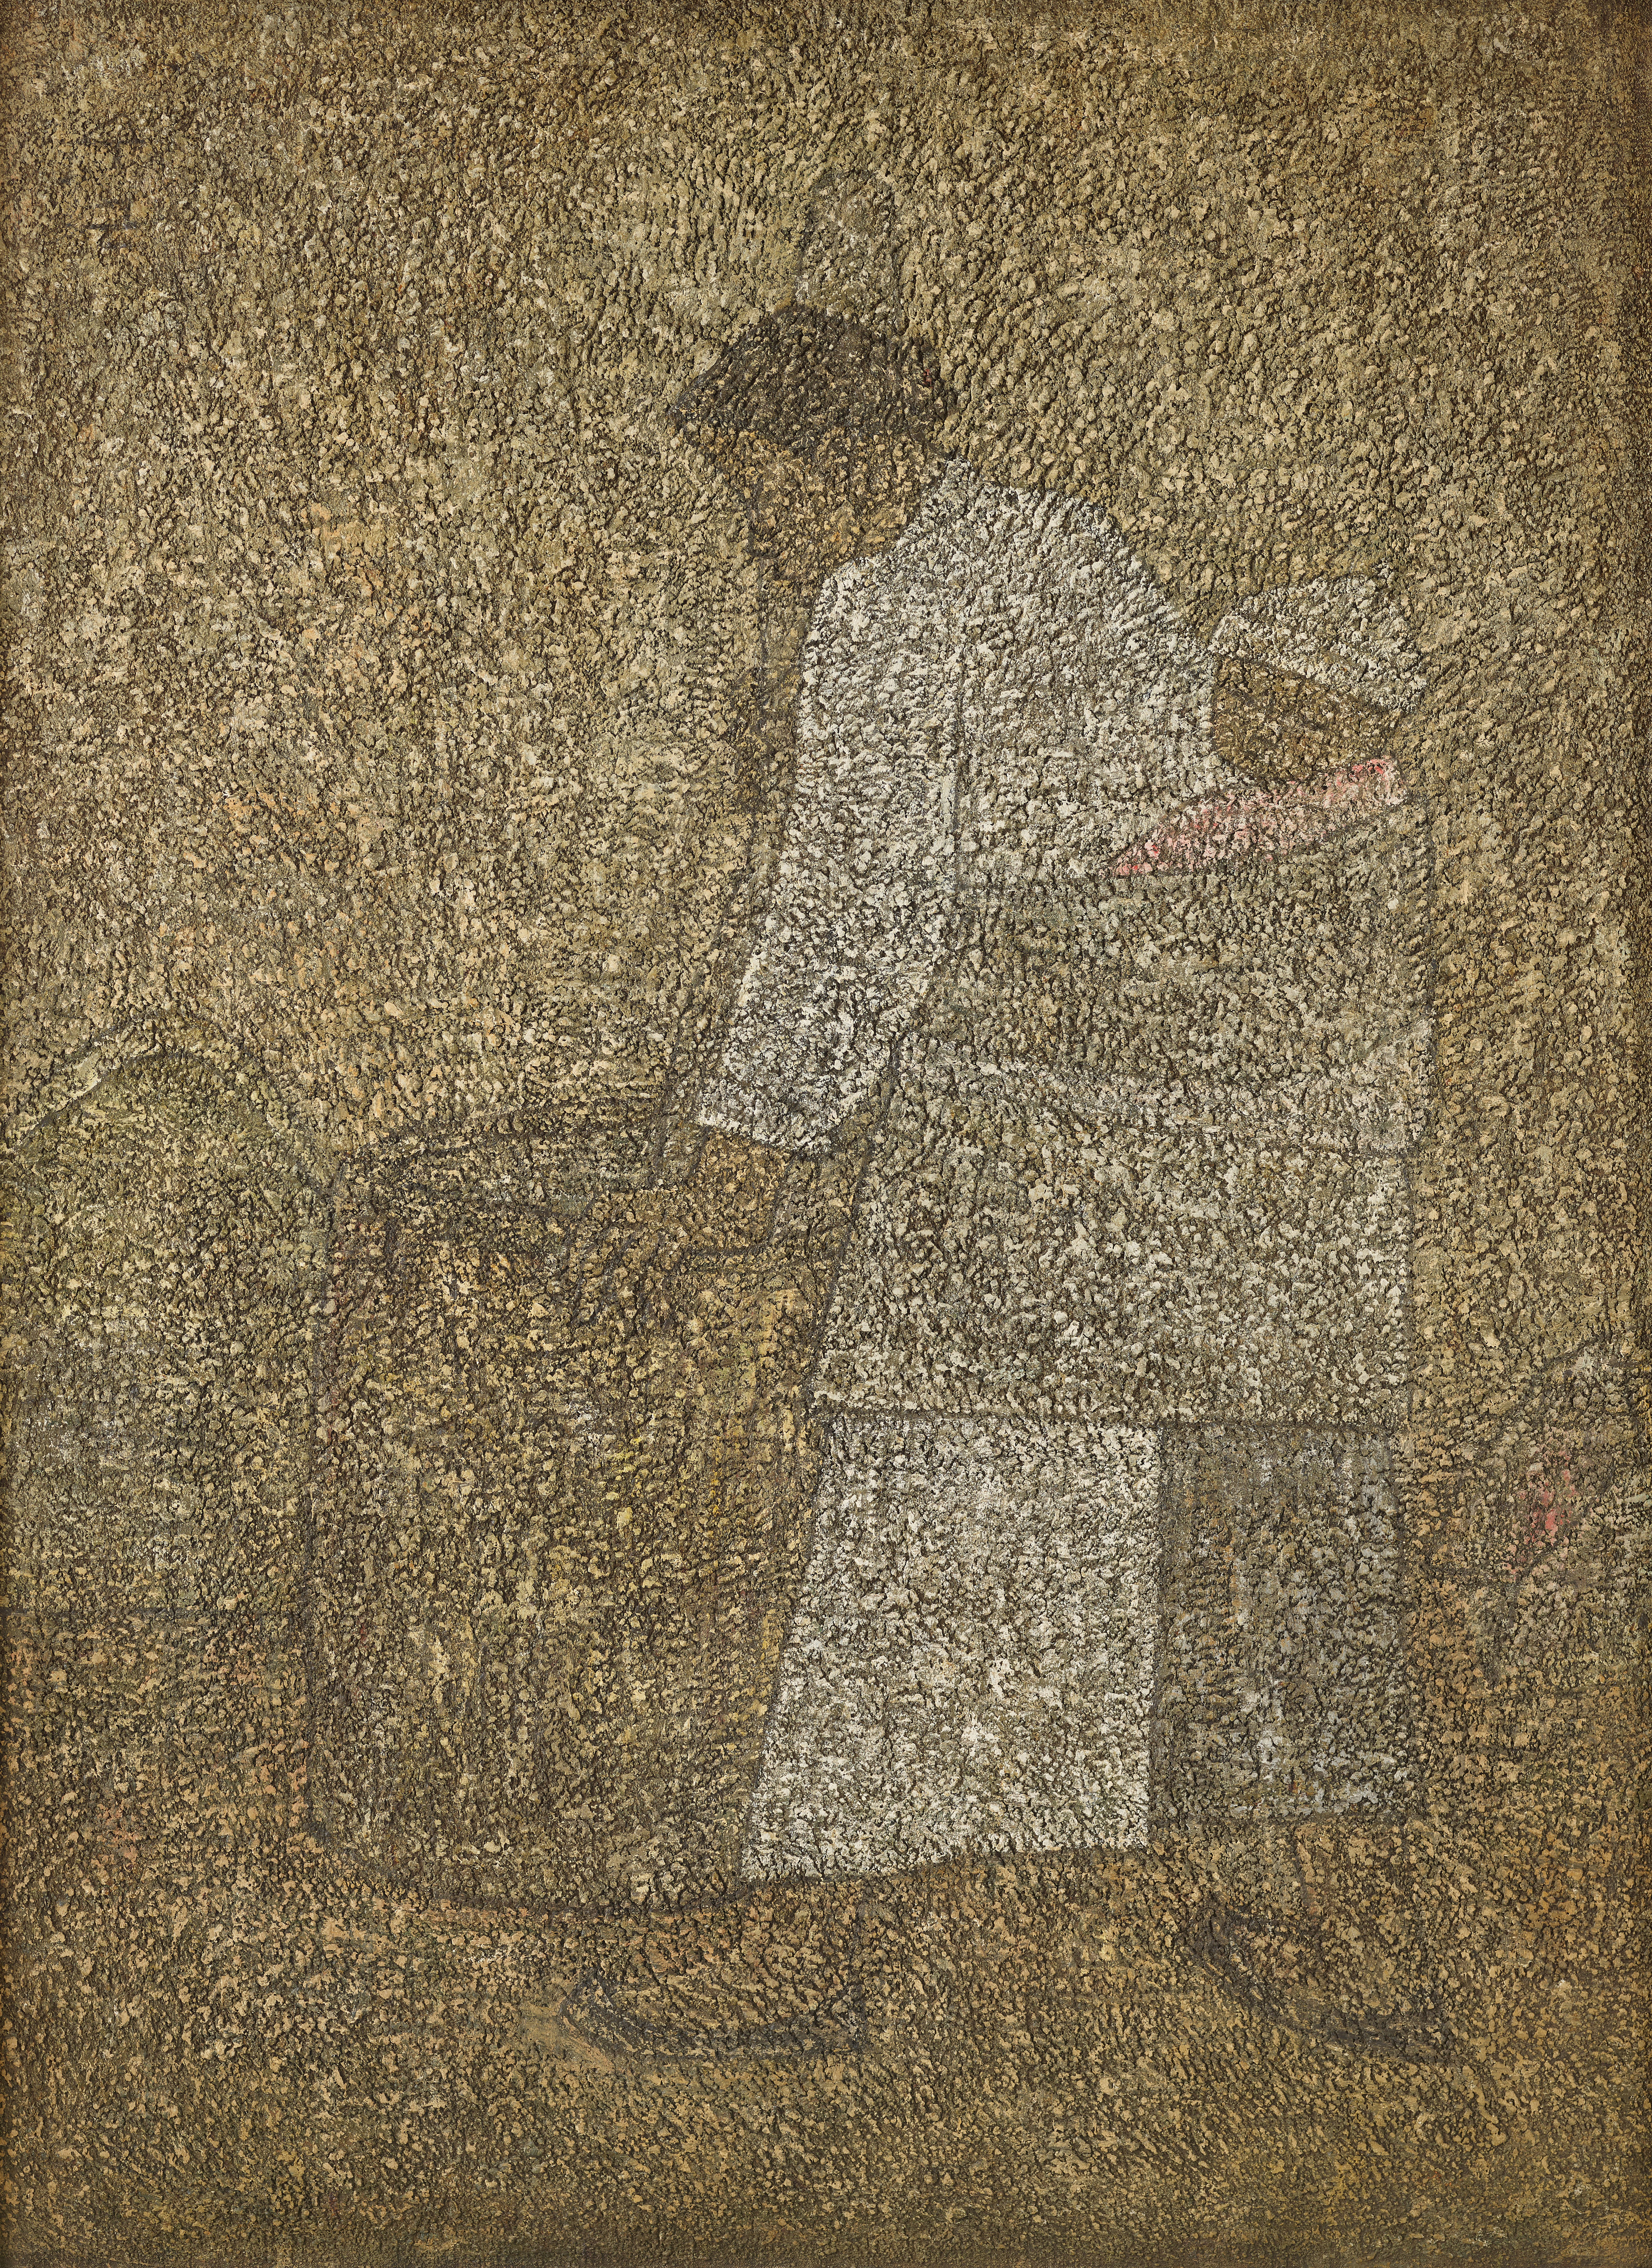 박수근, 절구질하는 여인, 1957, 캔버스에 유채, 130×97cm, 국립현대미술관 이건희컬렉션, ⓒ박수근연구소